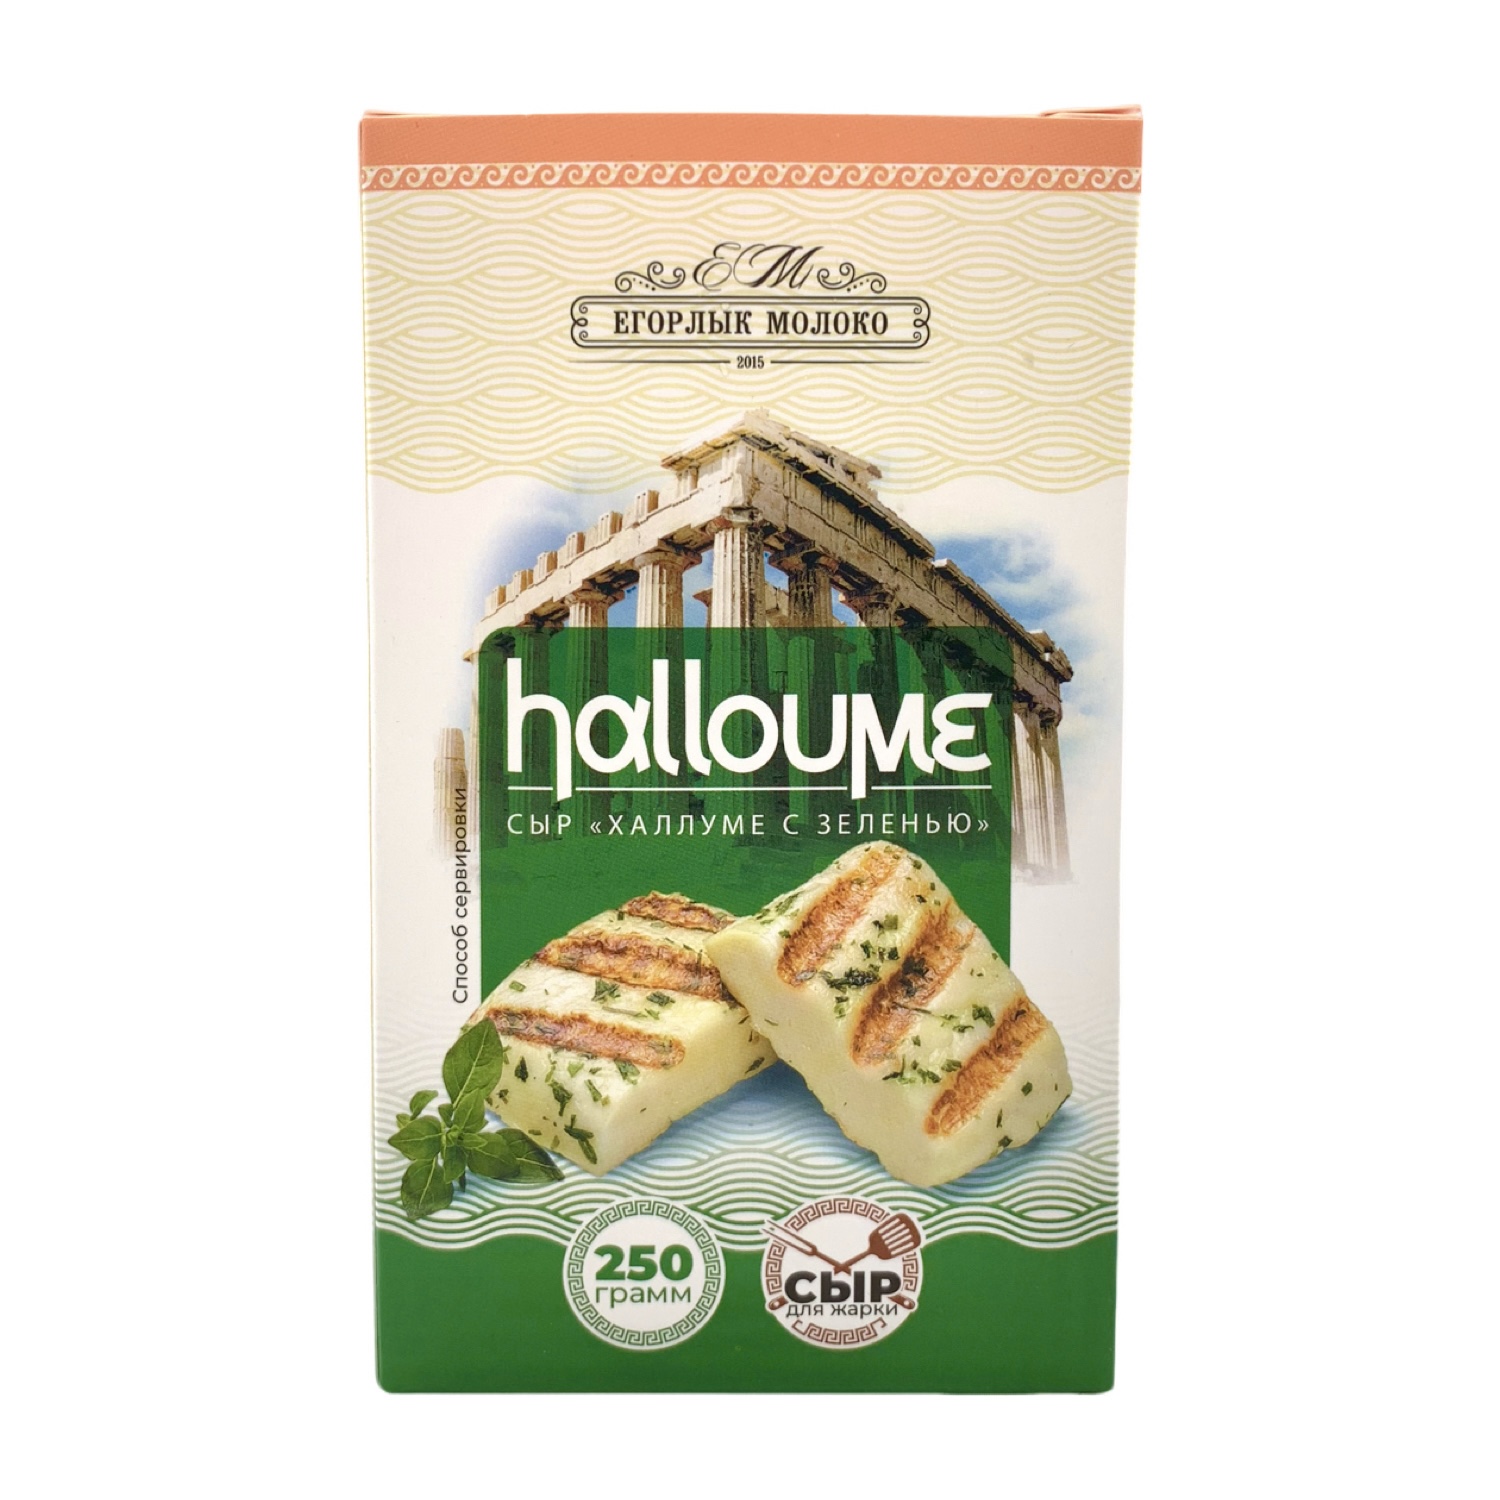 Сыр Халлуме с зеленью 250 гр